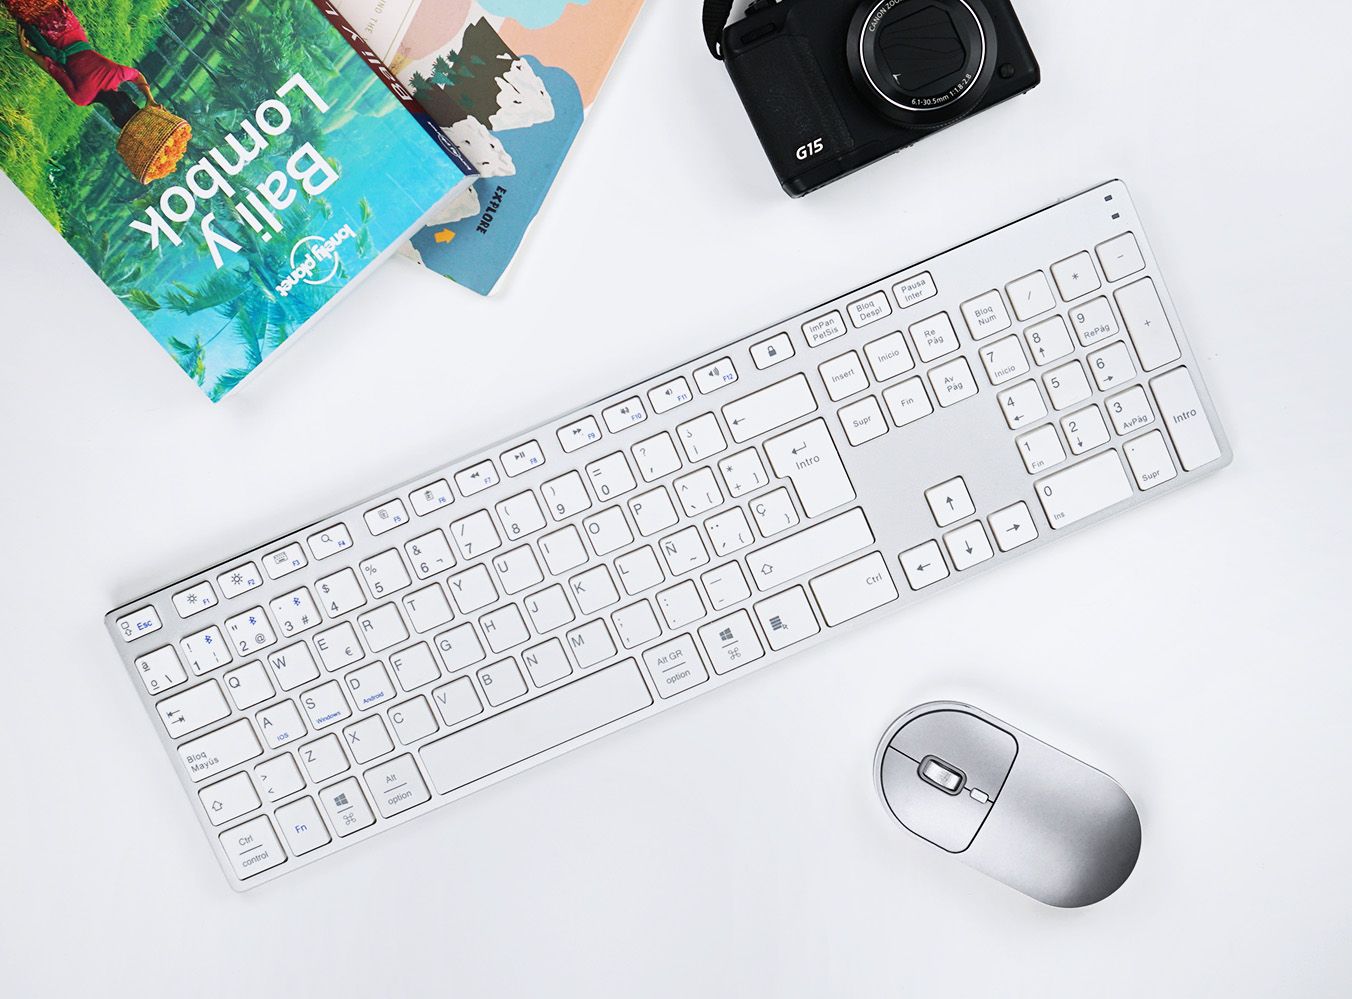 teclado extended blanco y plateado en escritorio